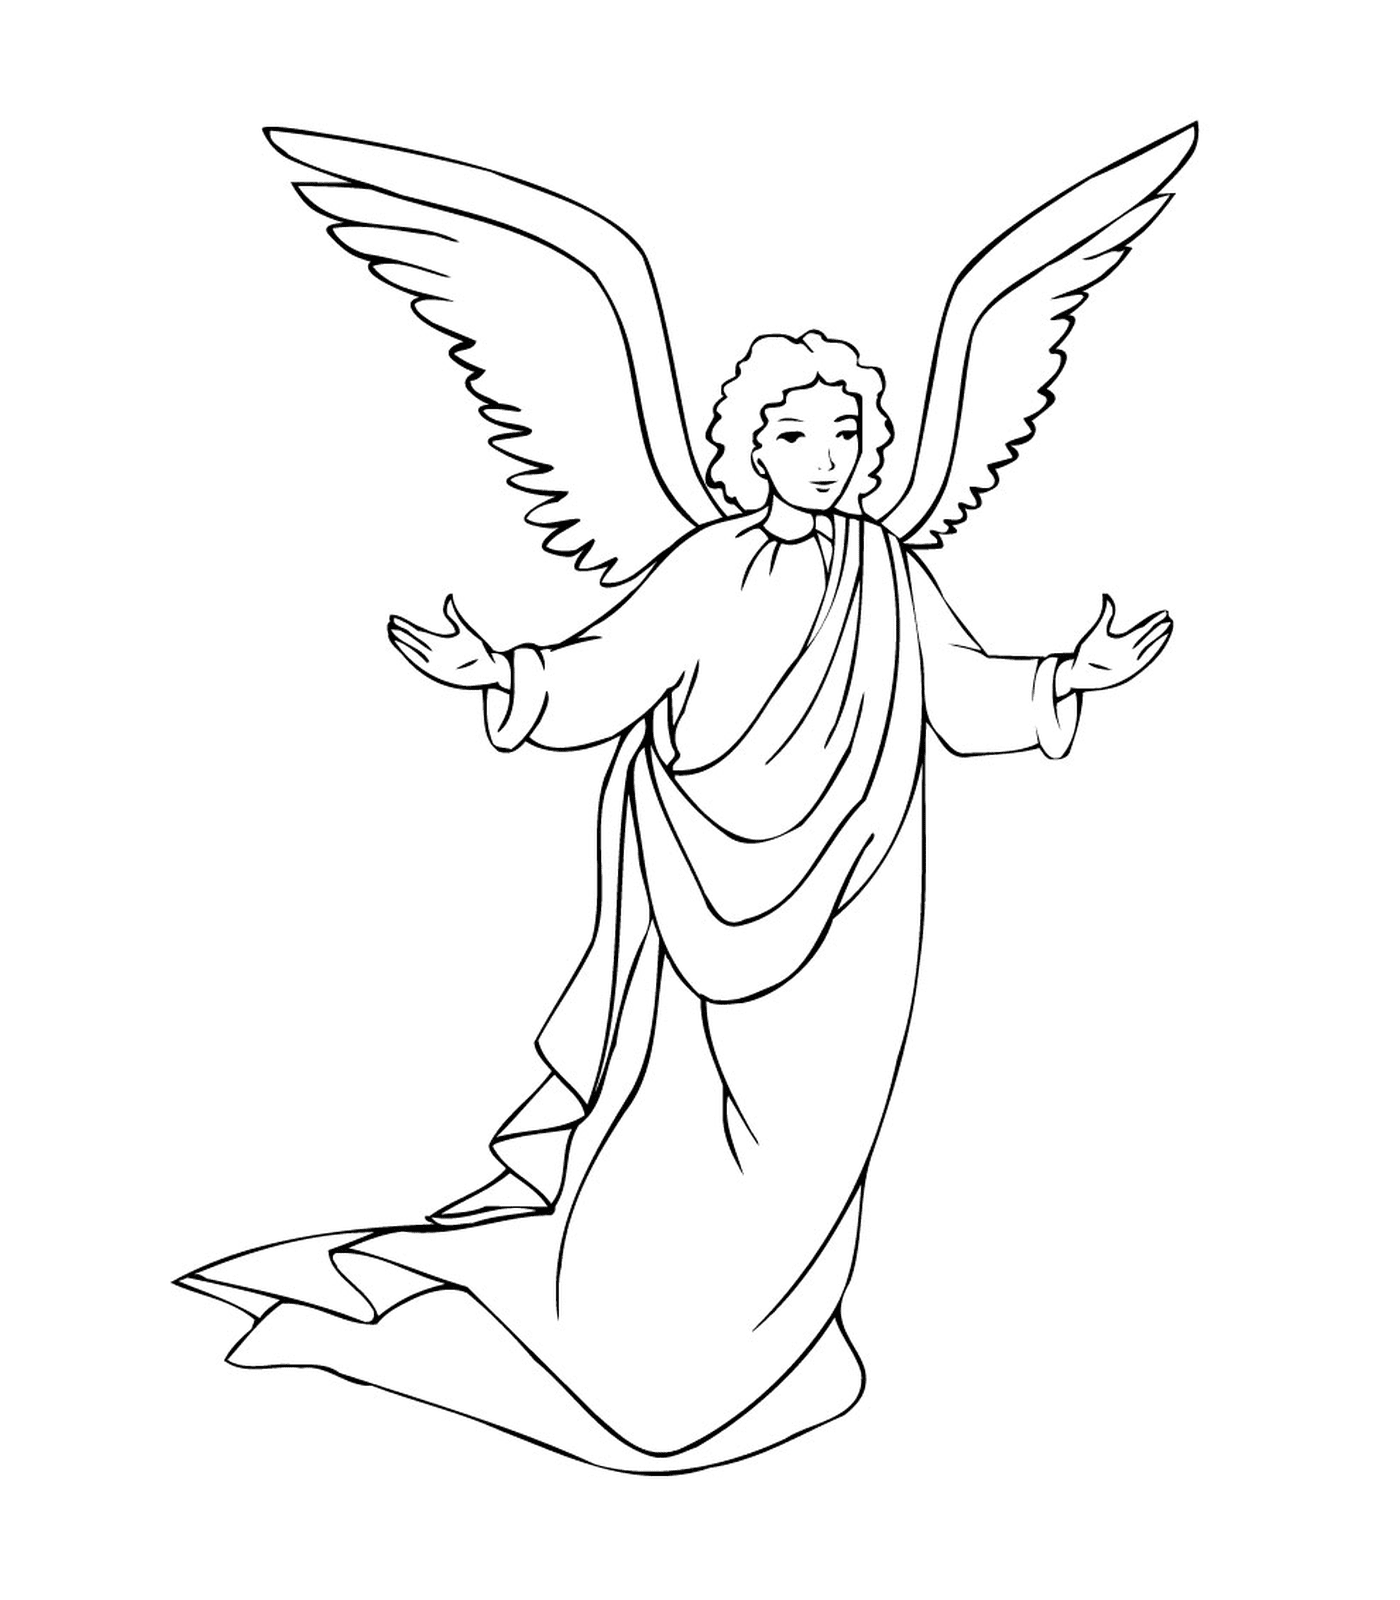  O arcanjo Gabriel com as asas implantadas 